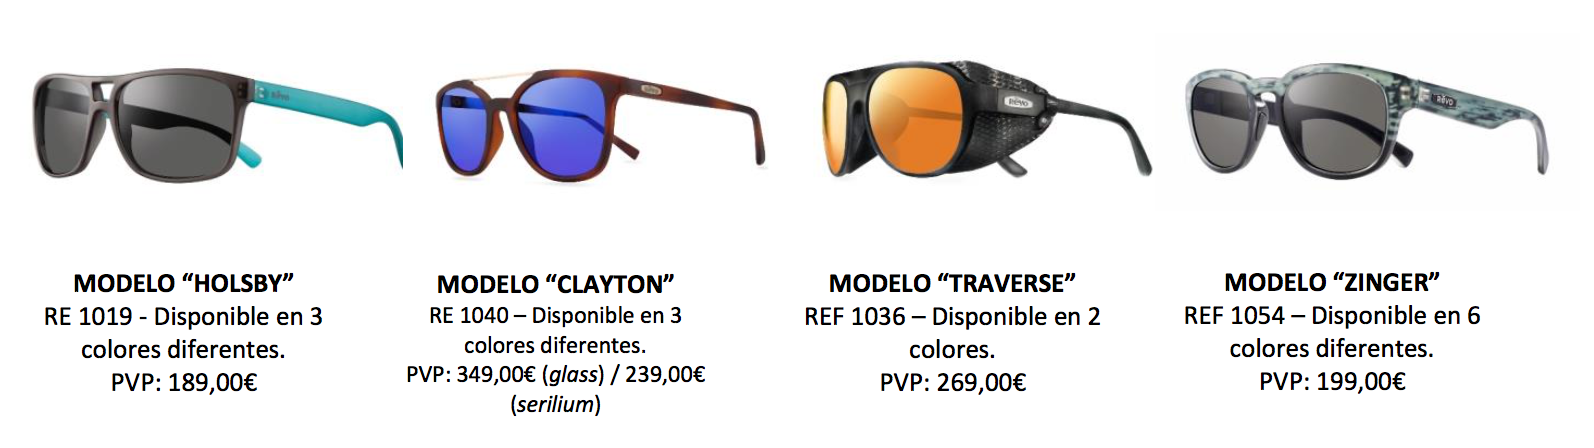 Gafas REVO, las gafas de sol más aventureras de esta Navidad